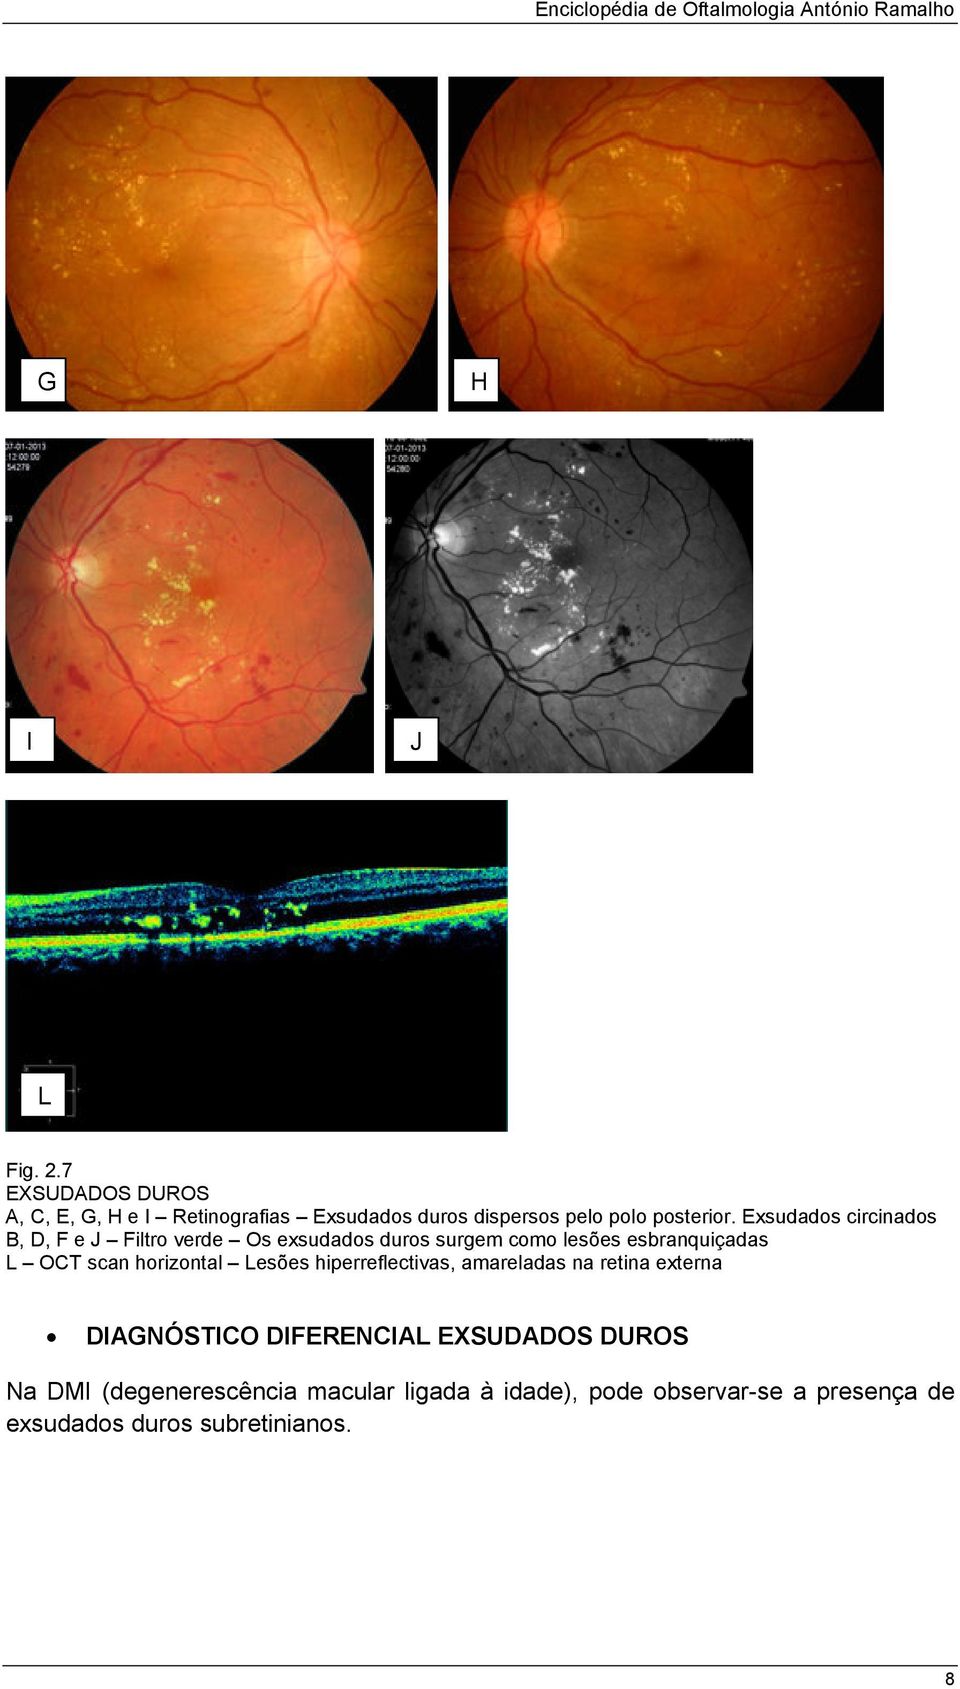 horizontal Lesões hiperreflectivas, amareladas na retina externa IGNÓSTIO IFERENIL EXSUOS UROS Na MI